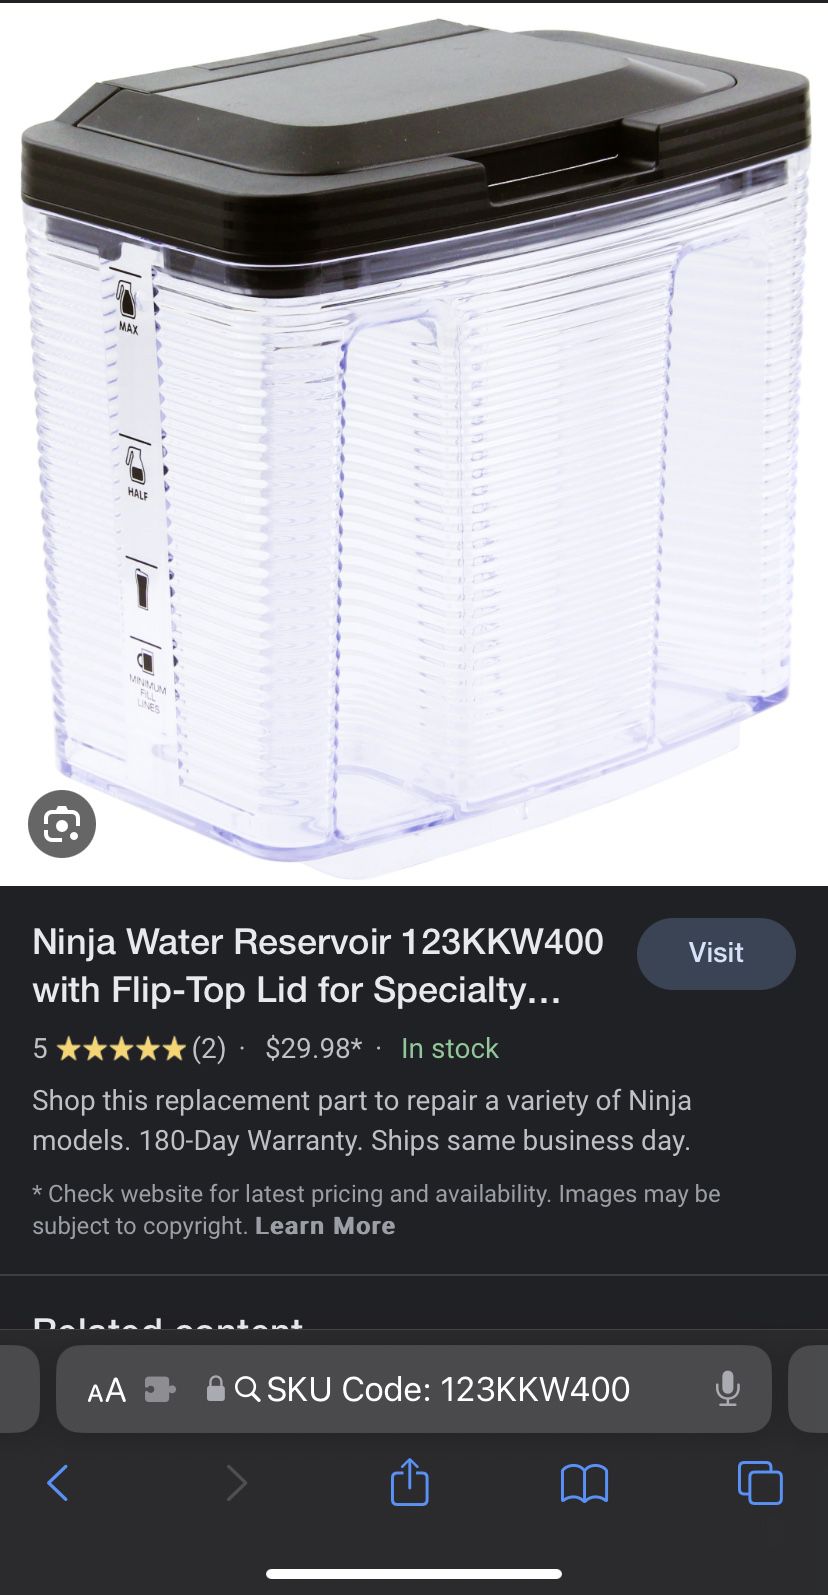 Ninja Water Reservoir 123KKW400 with Flip-Top Lid for Specialty